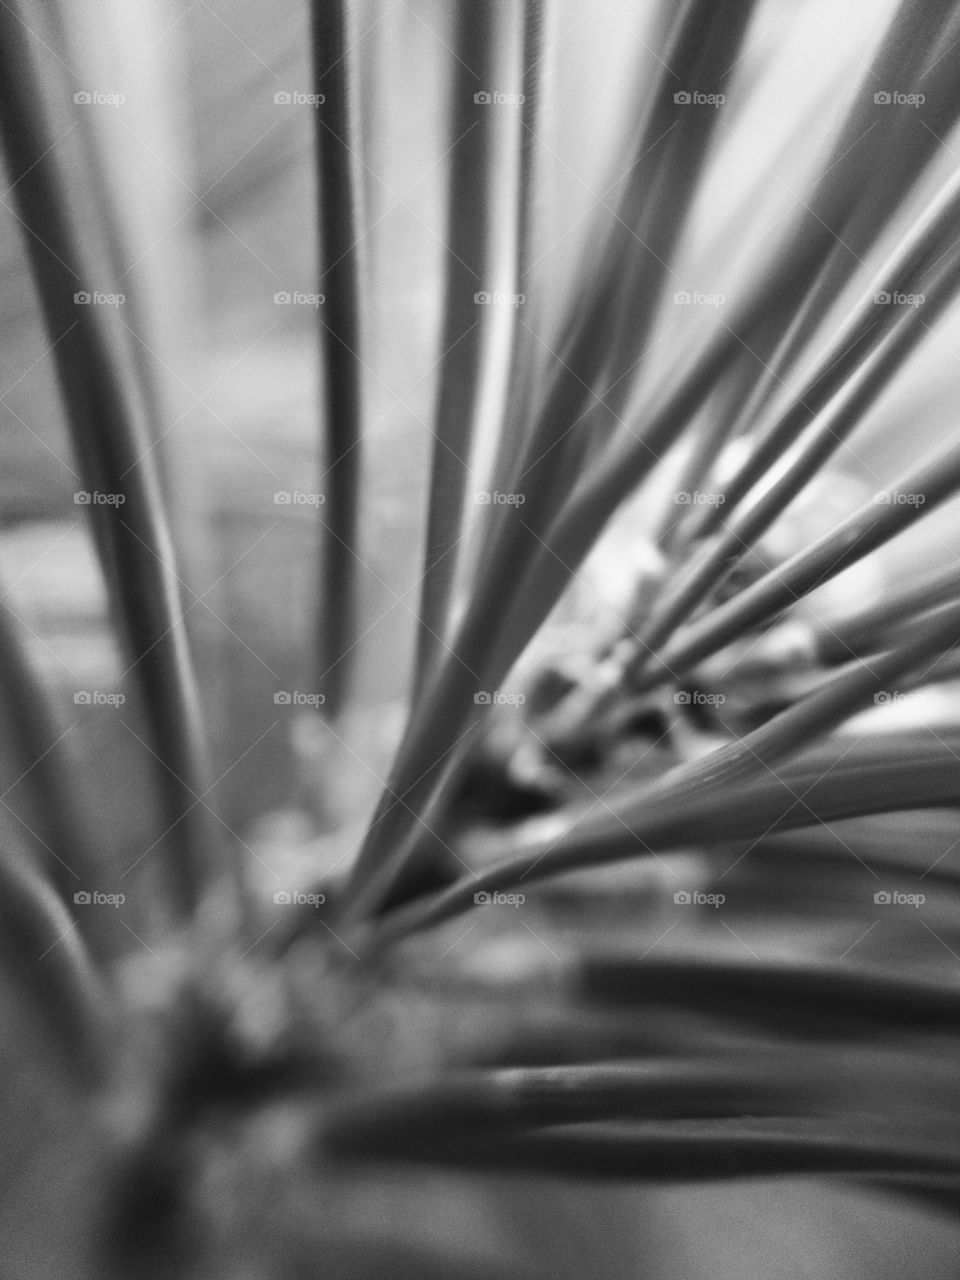 pine needles macro